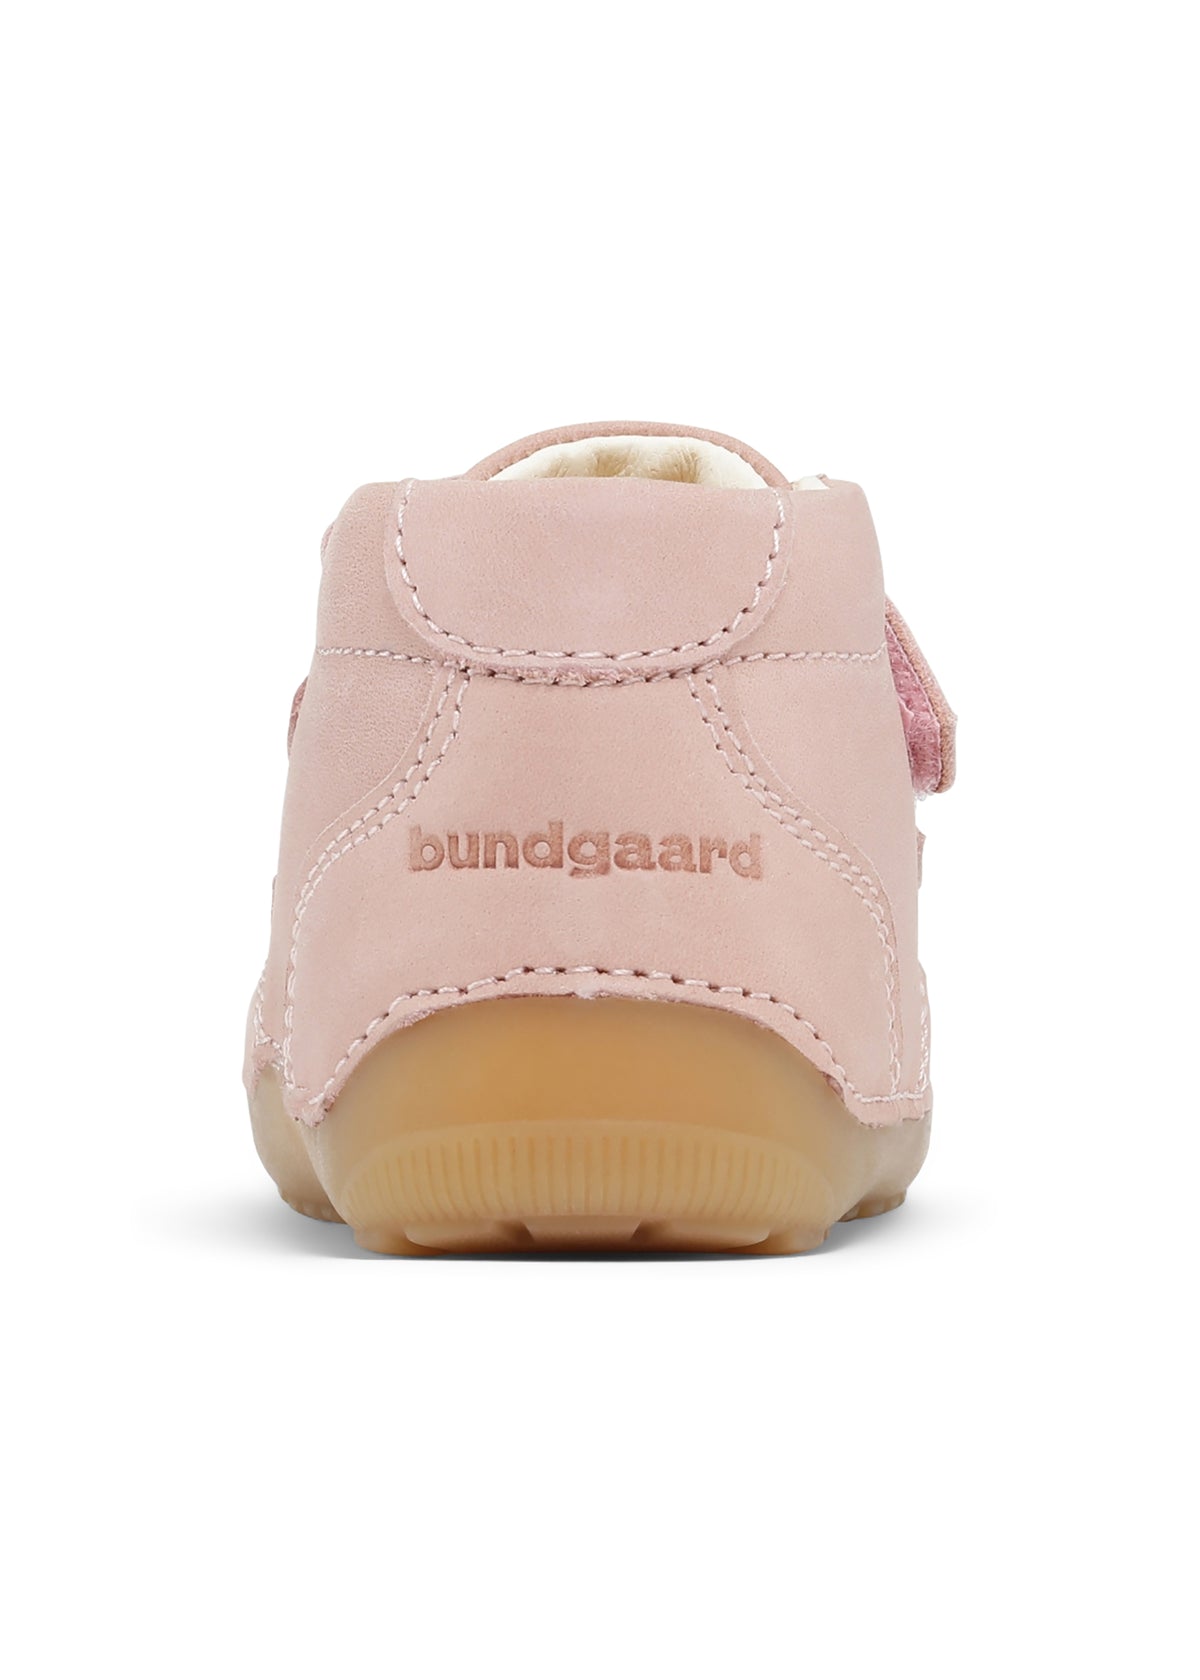 Children's first step shoes - Petit Strap, pink, Bundgaard Zero Heel